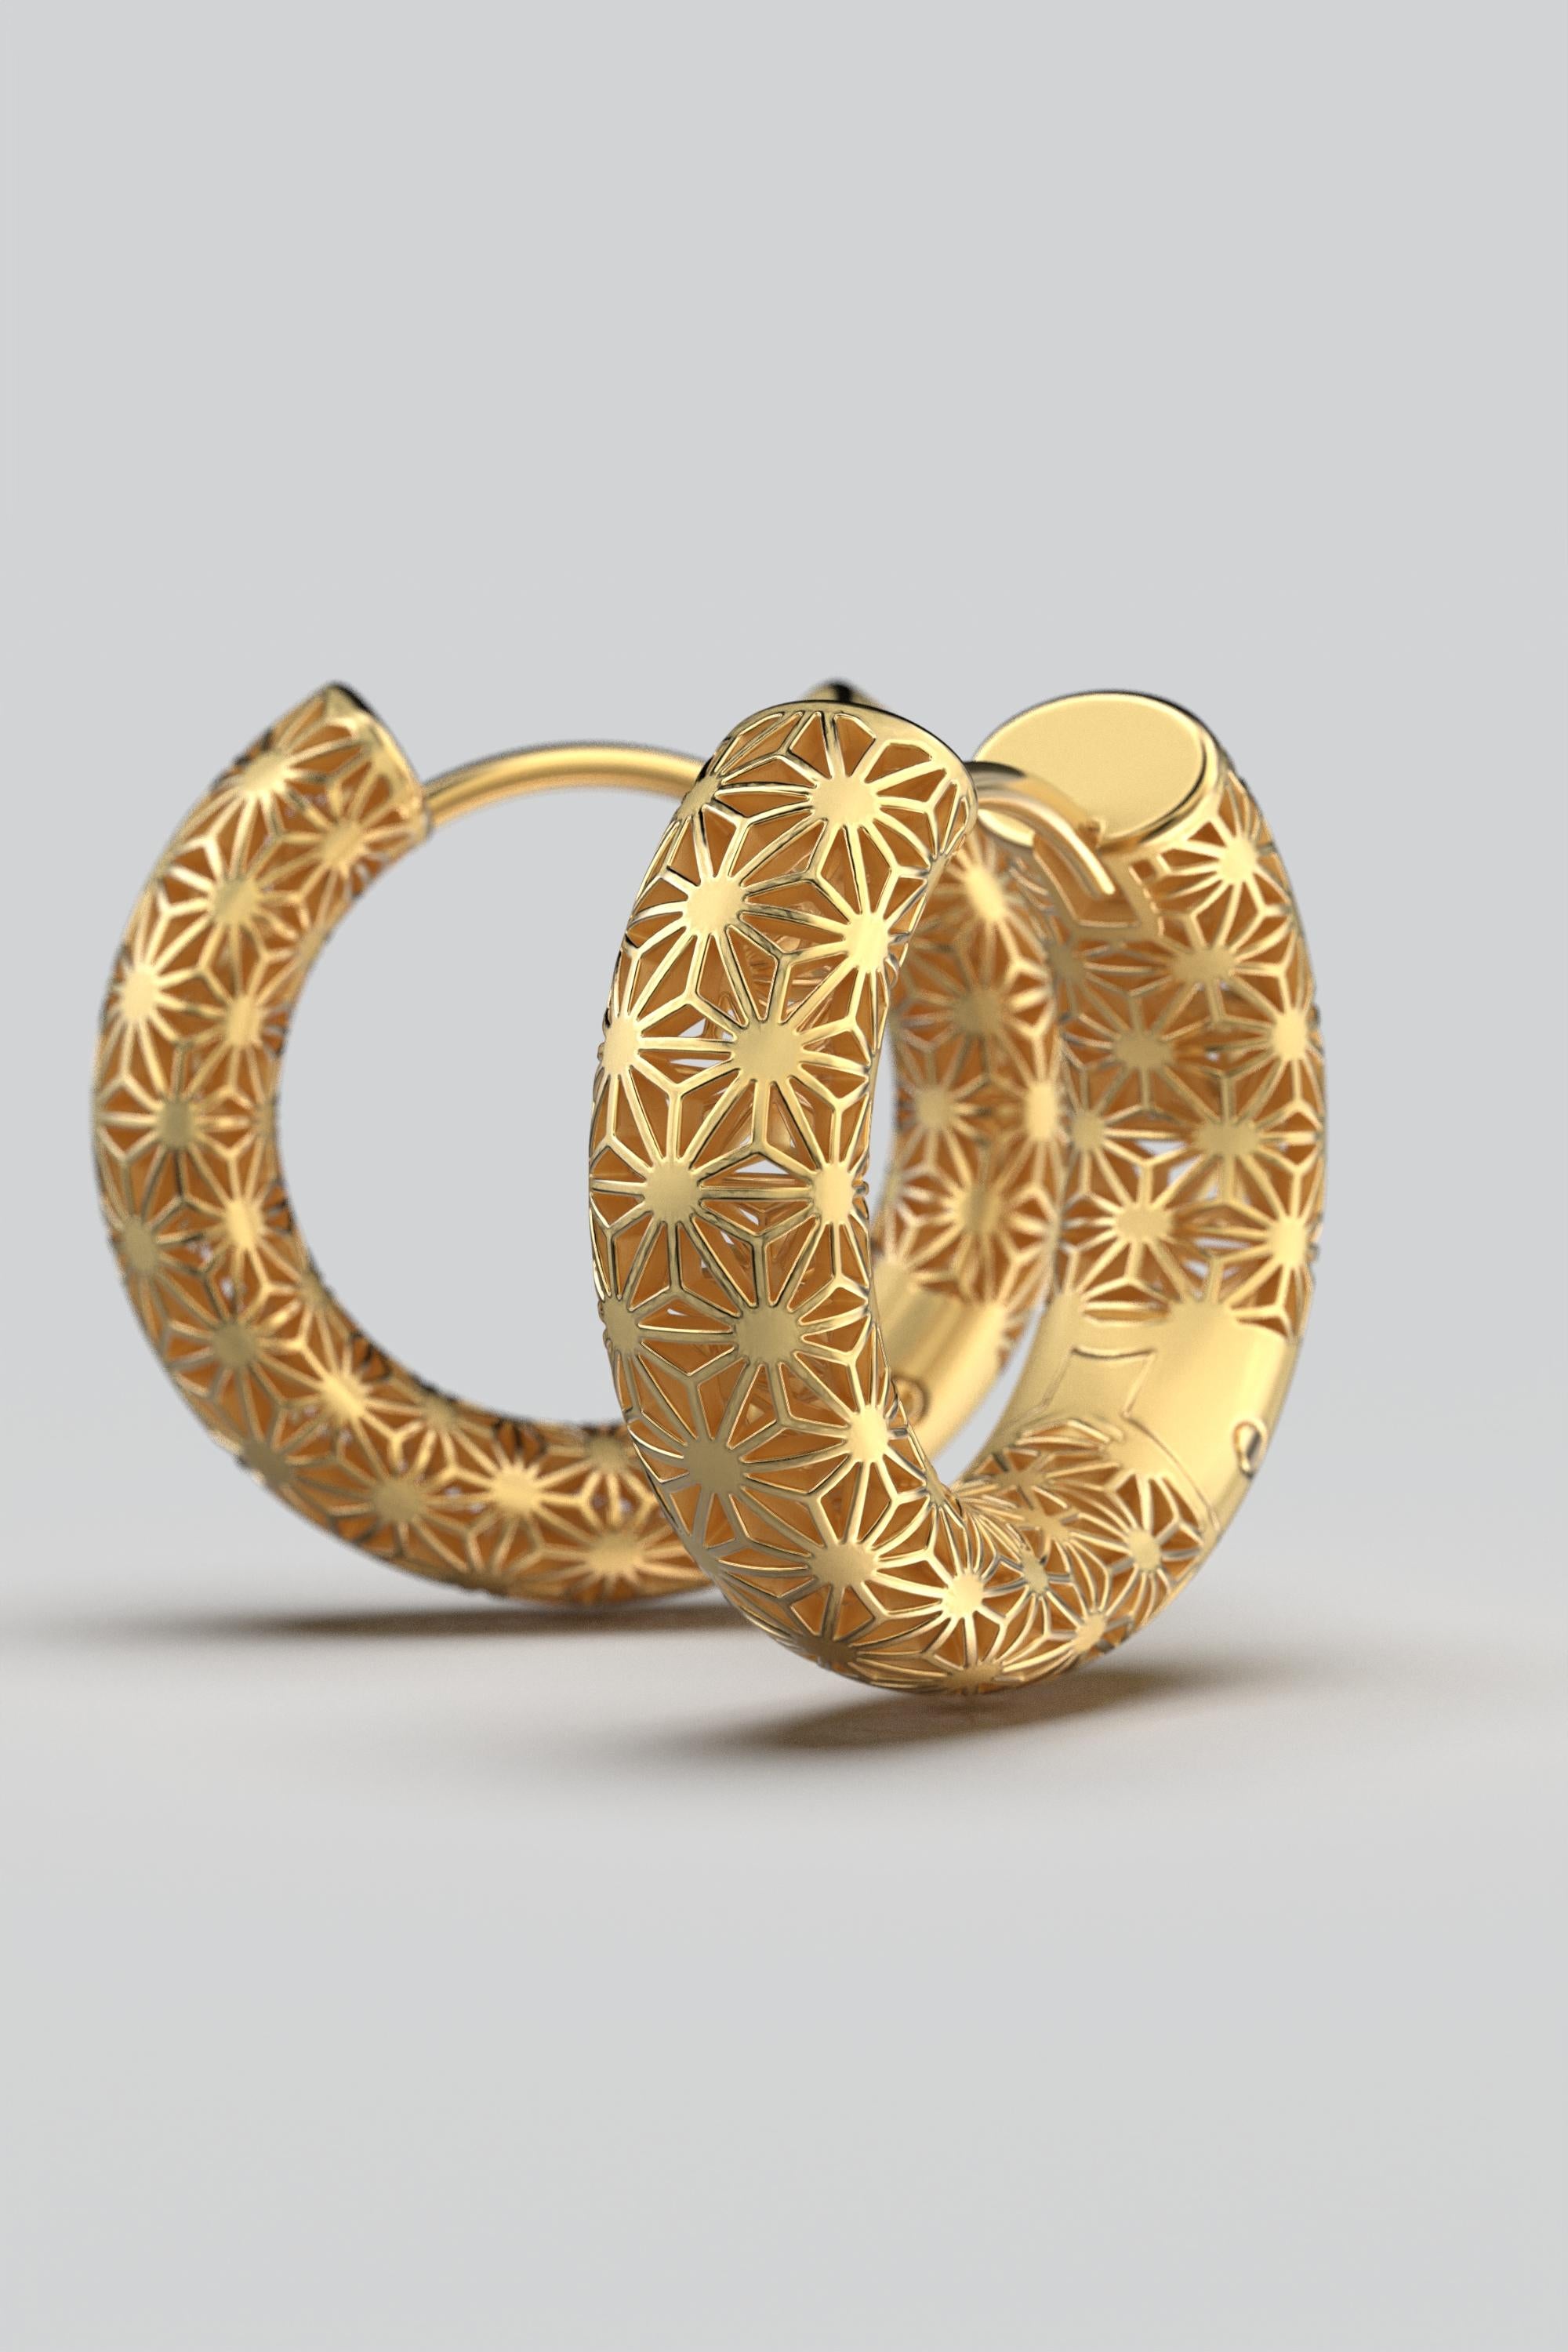  Oltremare Gioielli 14K Italian Gold Hoop Earrings - Sashiko Japanese Pattern  For Sale 3